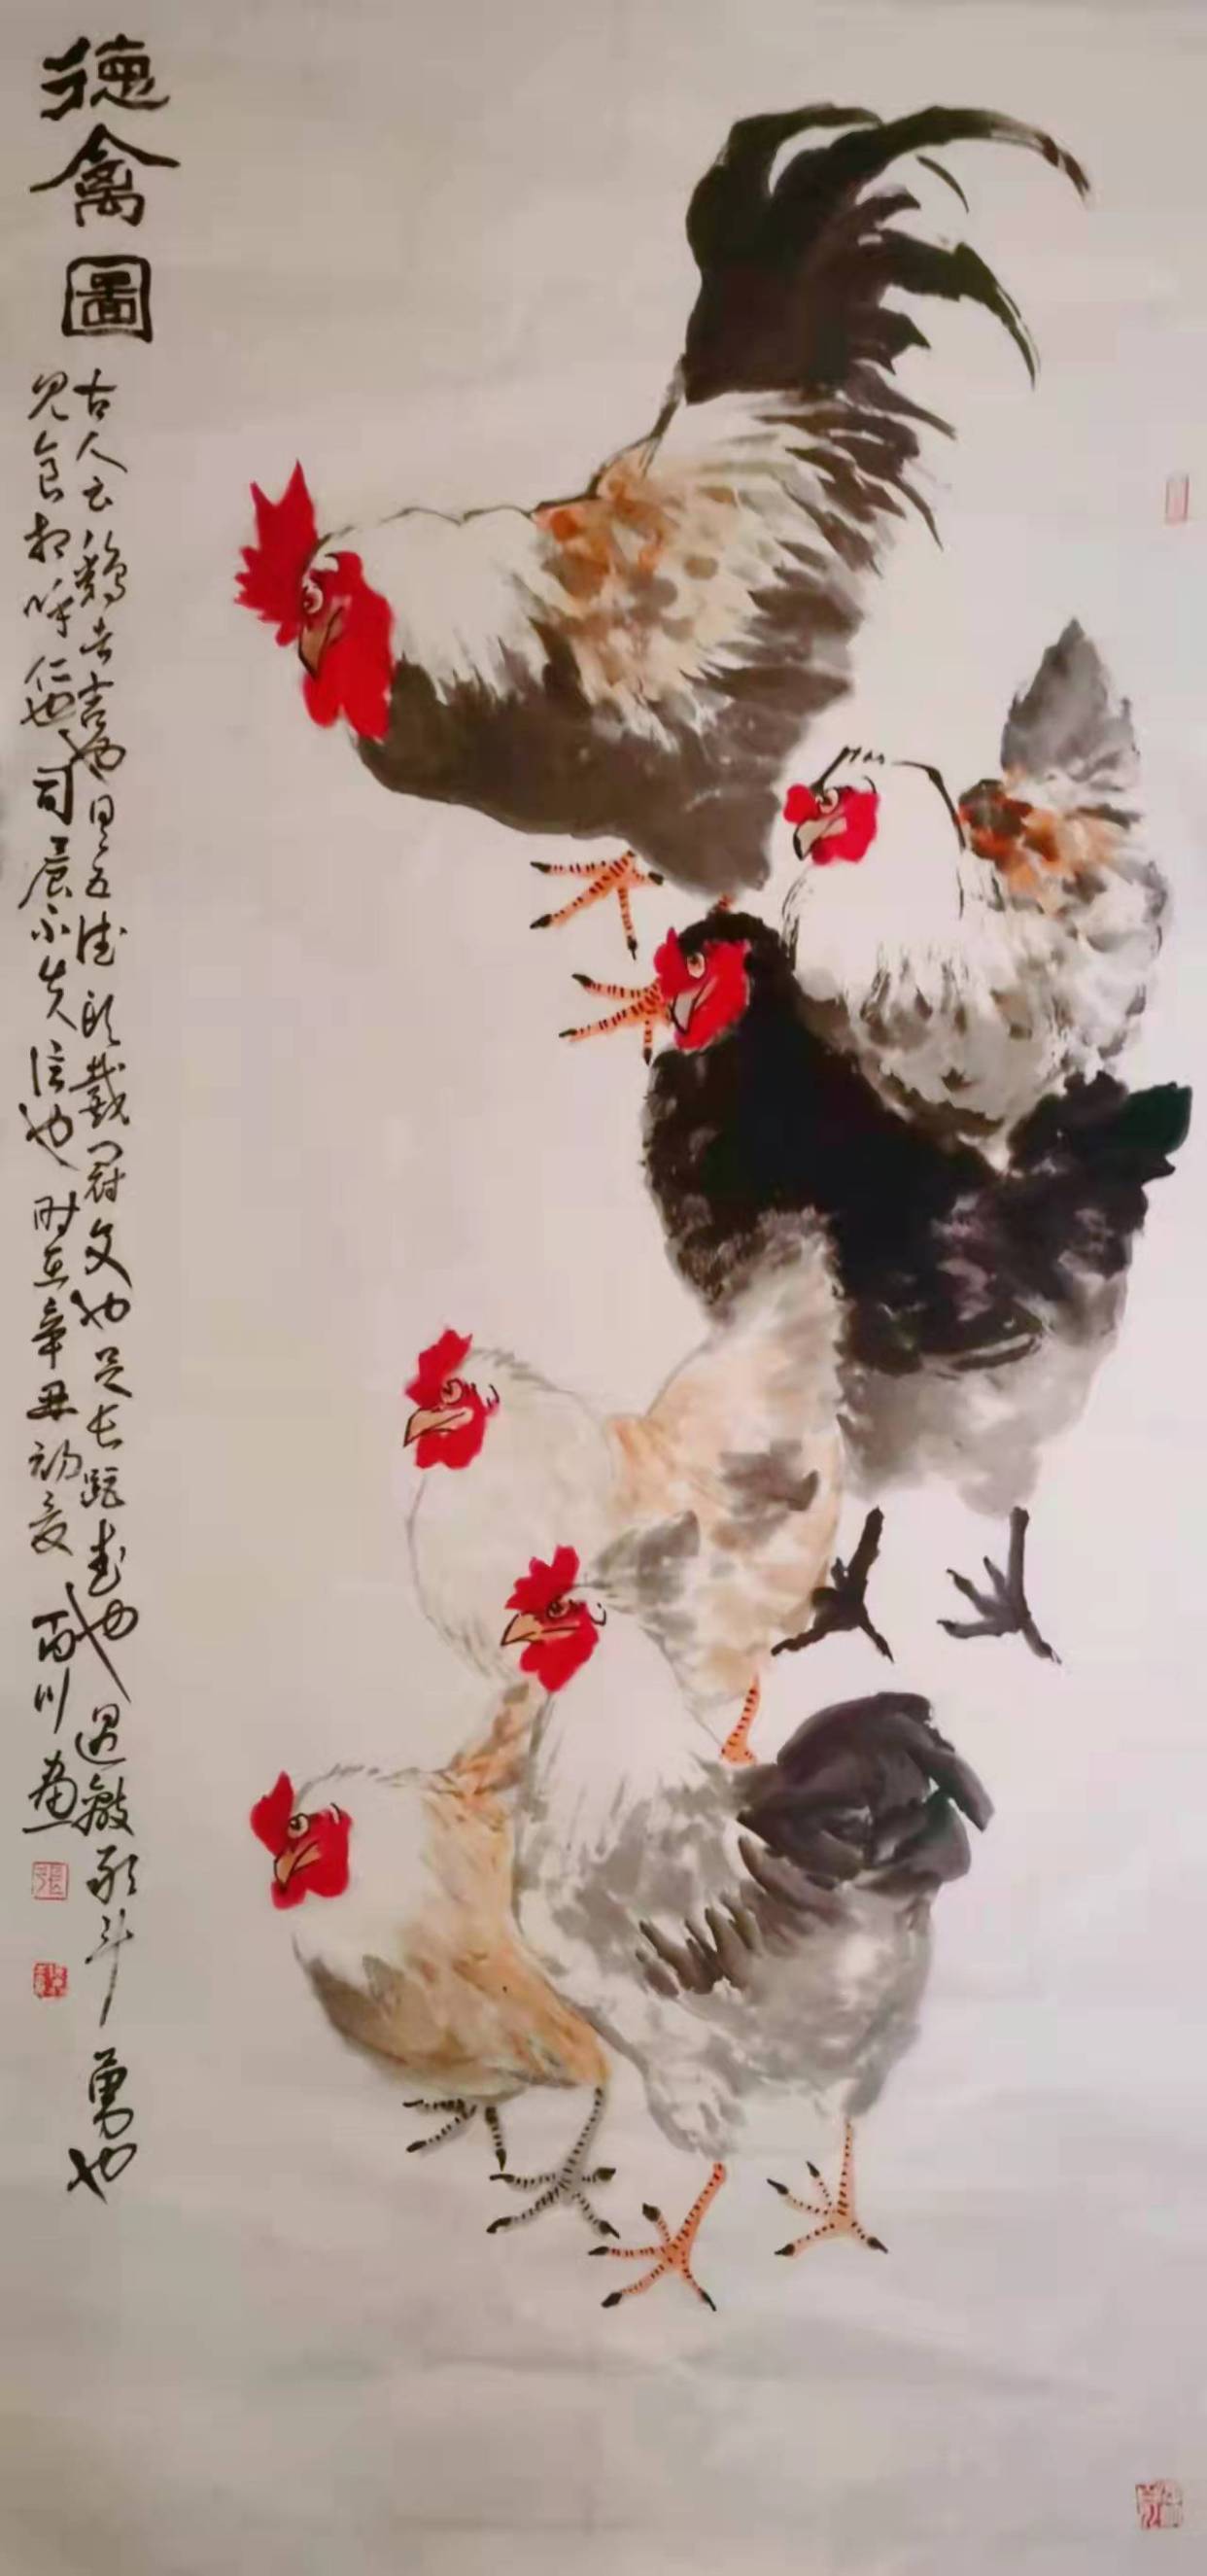 现代画鸡的画家鸡王图片